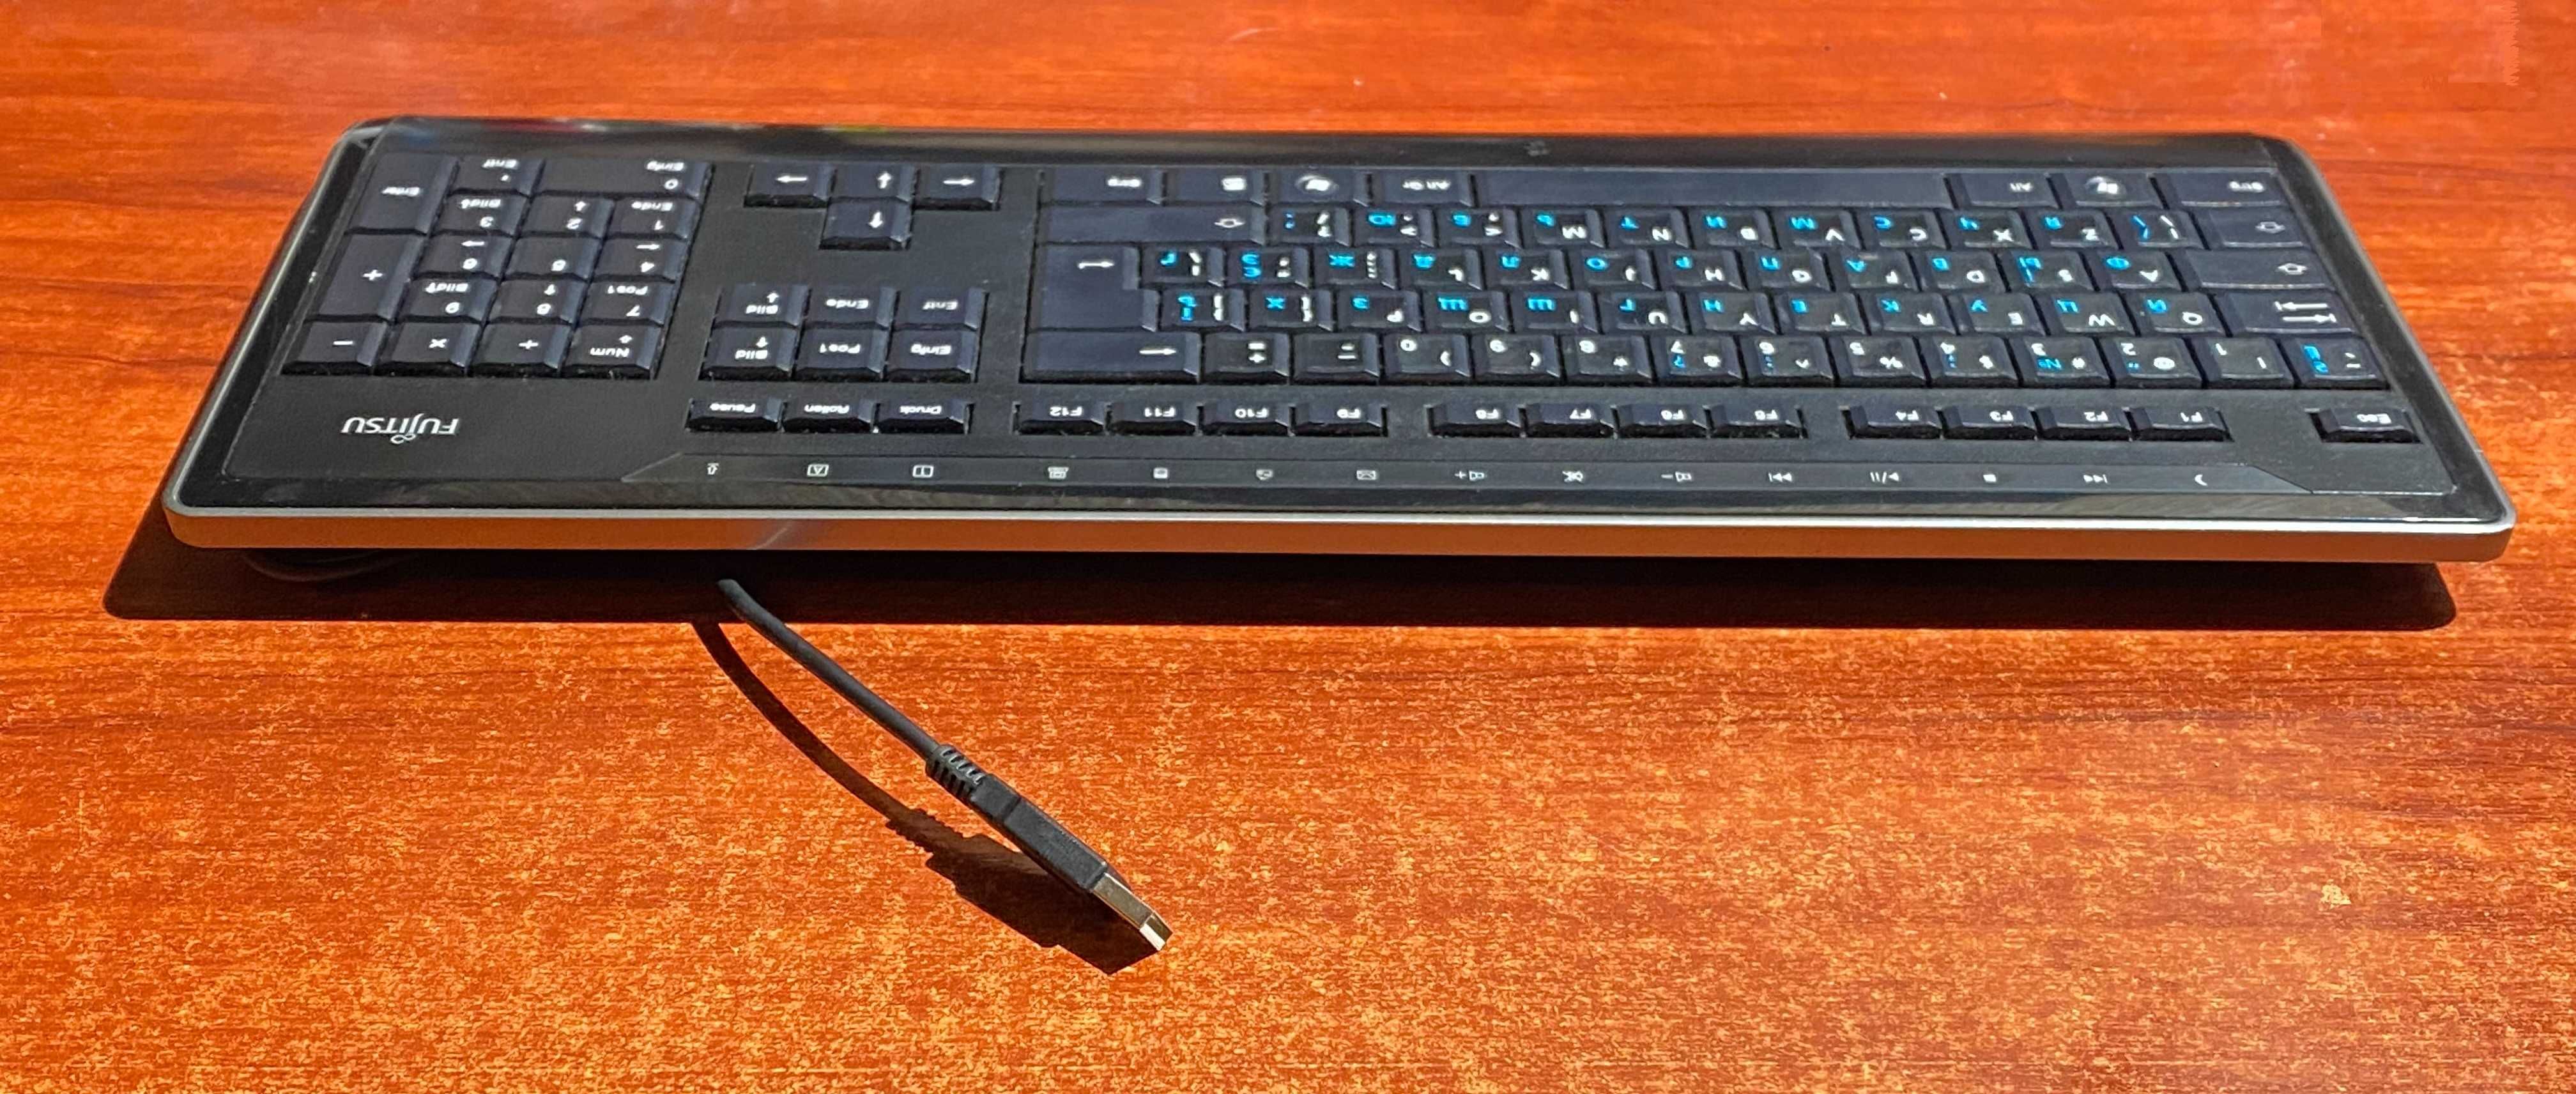 Keyboard Fujitsu KB900 провідна USB клавіатура